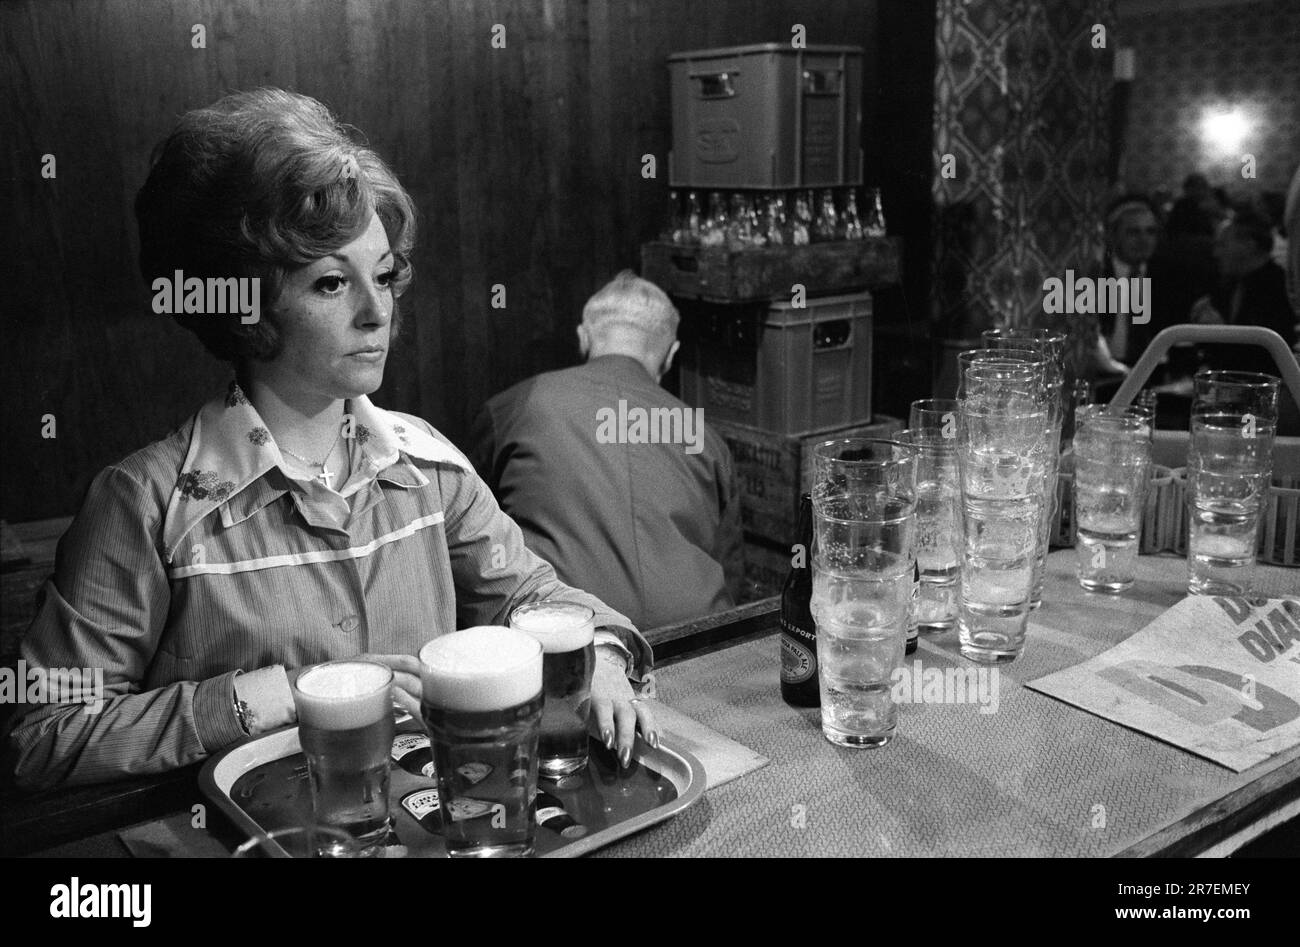 Lavoro serale a bassa retribuzione part-time. Un barman con un vassoio di pinte di birra che servirà. Byker e St Peters Working Men's Club, Newcastle upon Tyne, Tyne and Wear, Inghilterra settentrionale circa 1973. 1970S REGNO UNITO HOMER SYKES Foto Stock